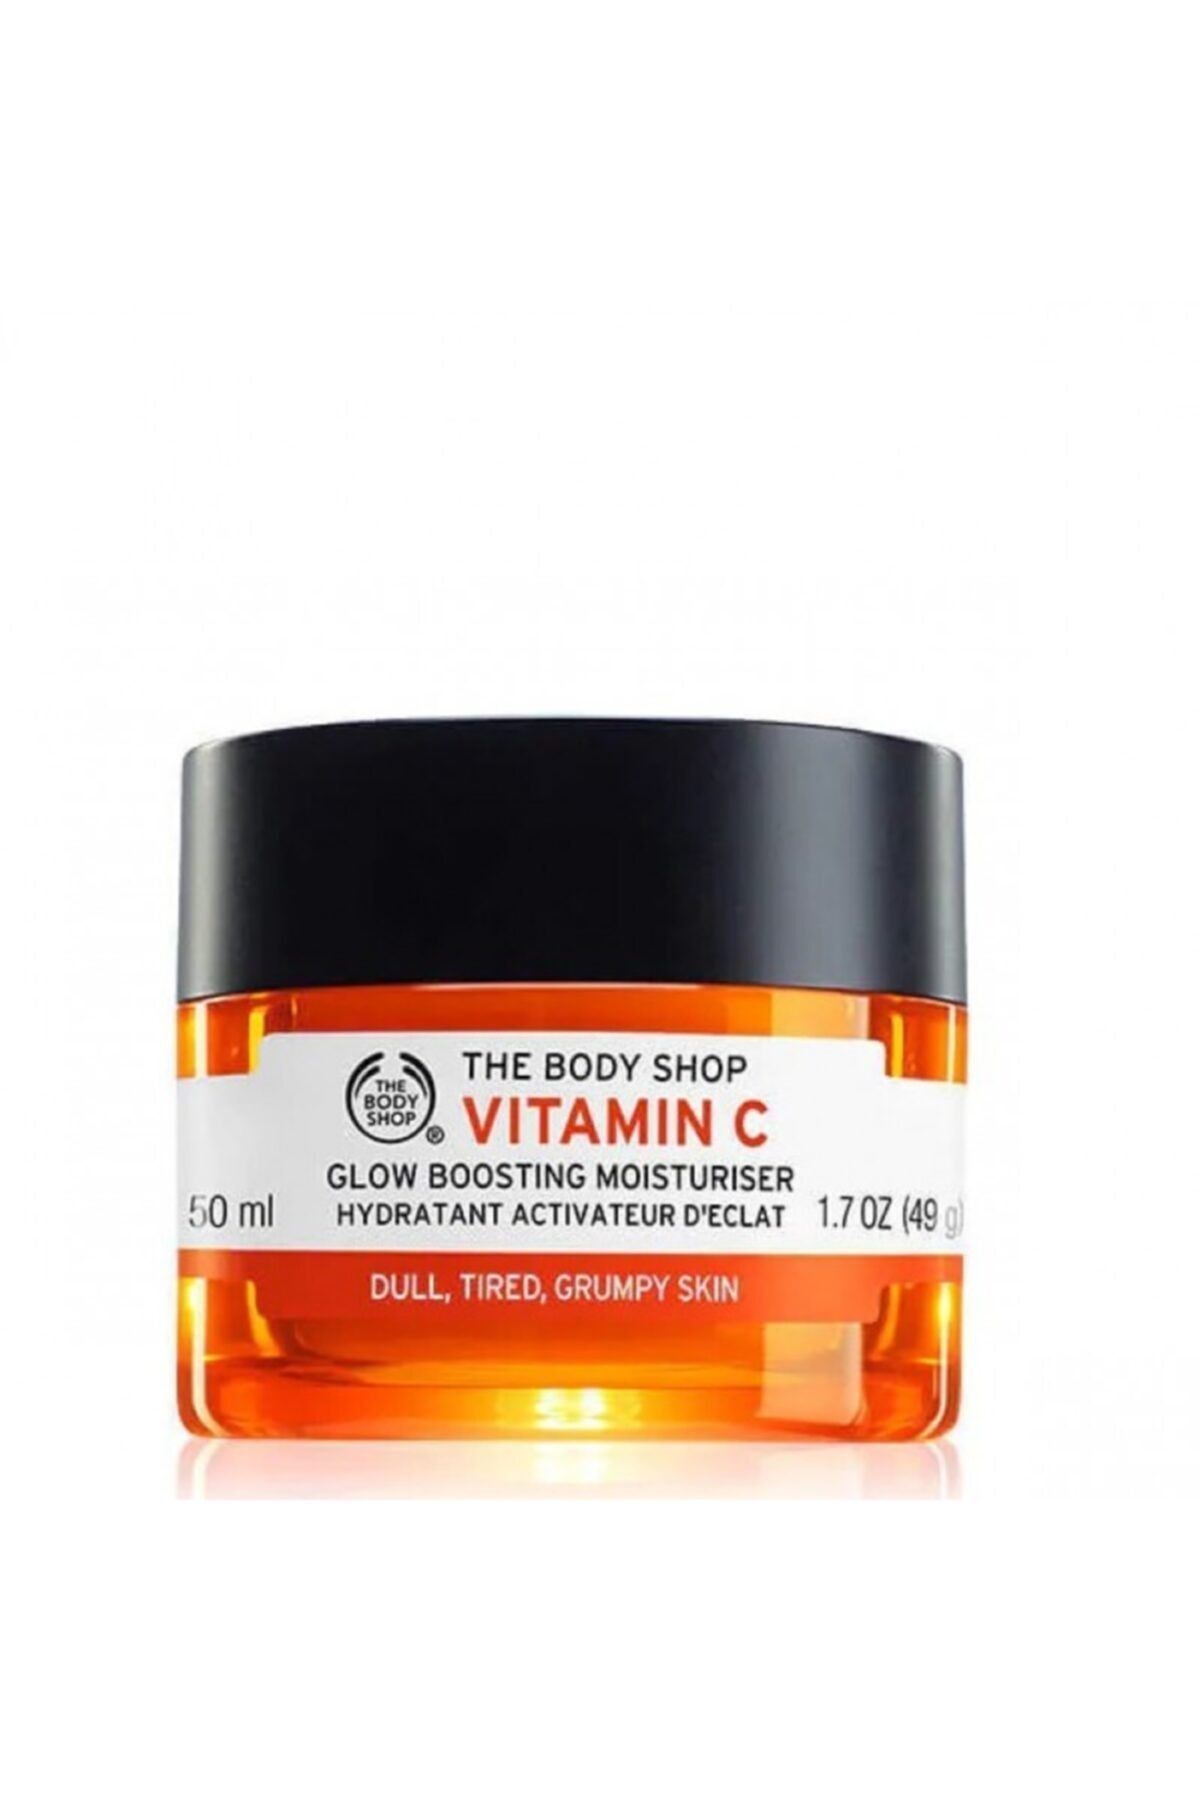 THE BODY SHOP Vitamin C - Ekspres Nemlendirici 50 Ml